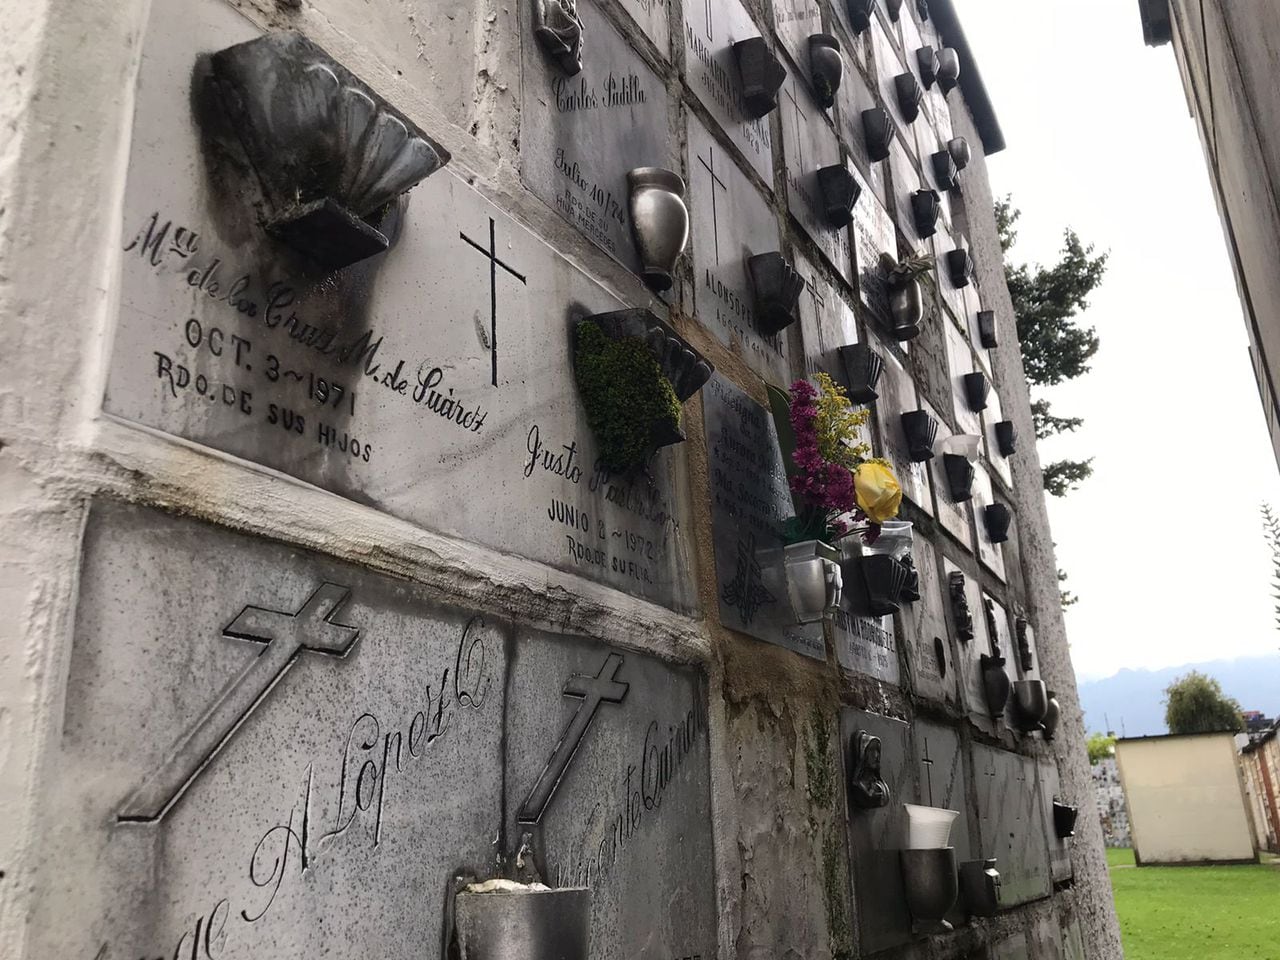 Saqueo de tumbas en Cementerios de Bogotá